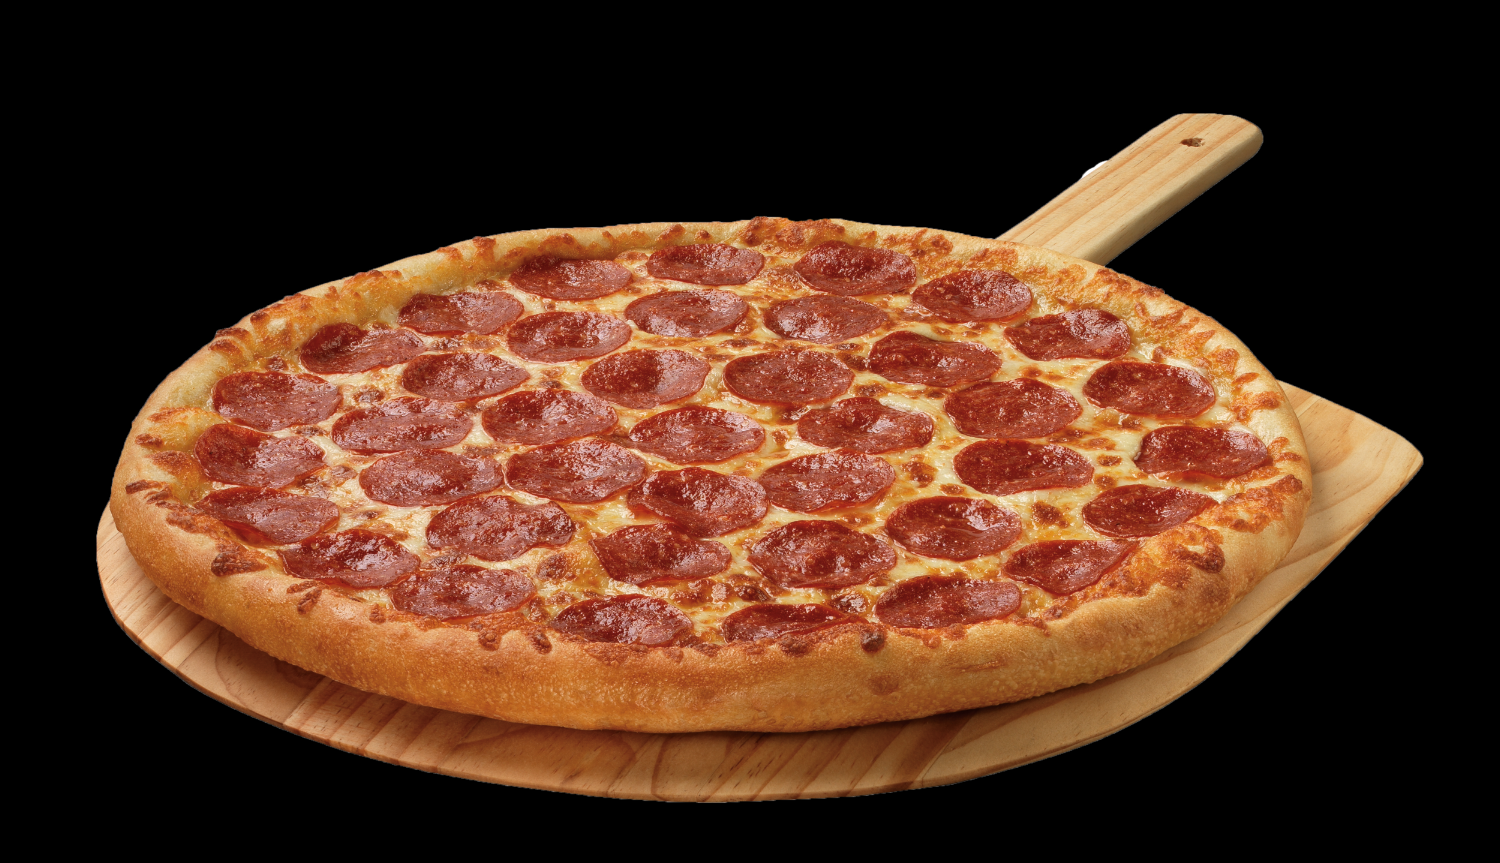 я здесь для обучения мне нужна половина из четырех пицц пепперони хорошая пицца отличная пицца фото 90